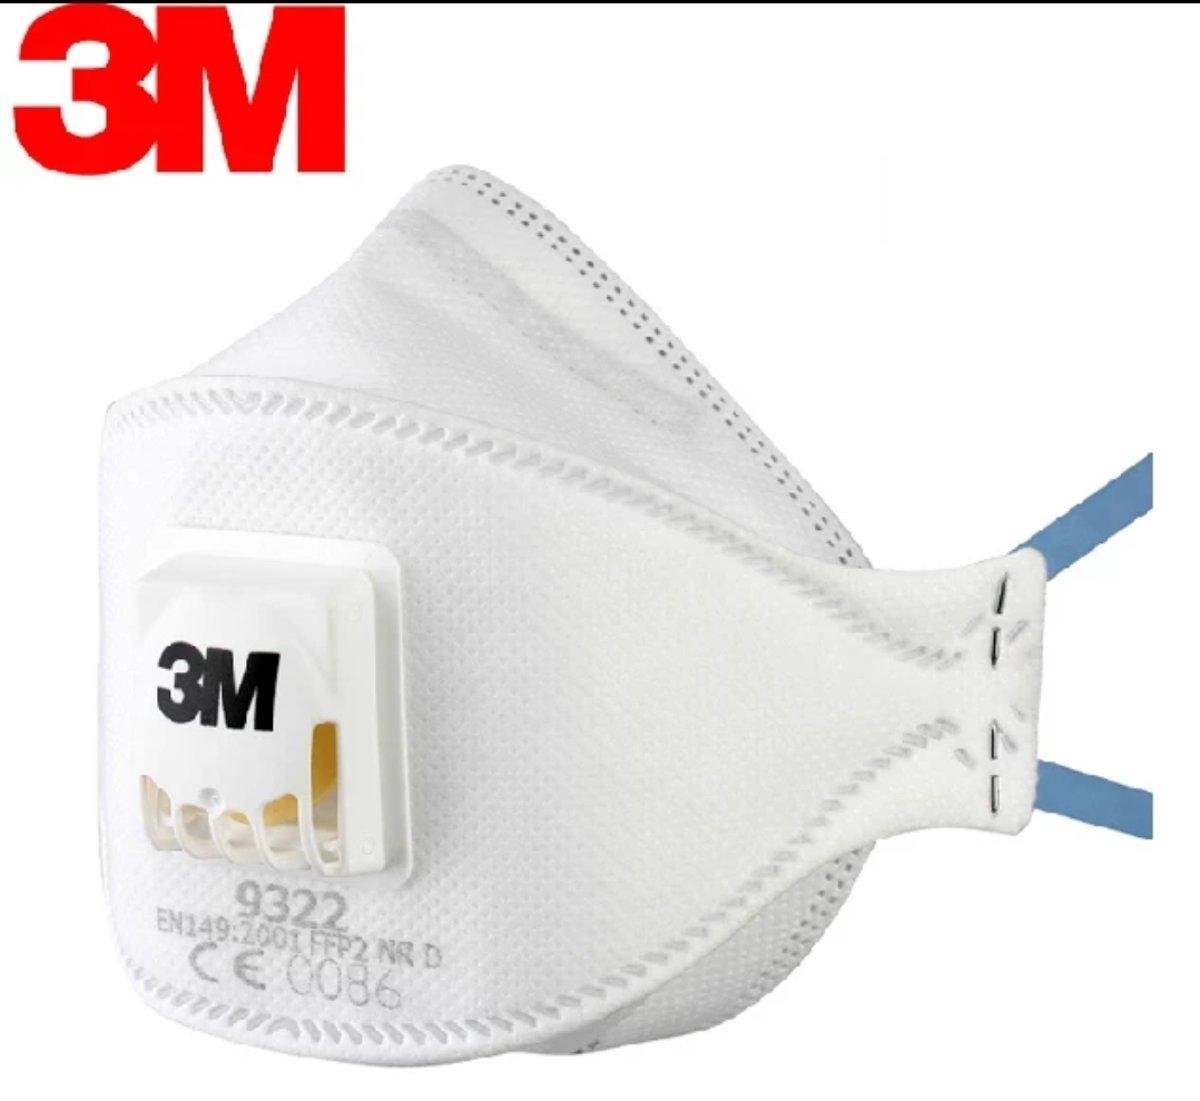 3M Mondmasker - Mondkapje - Gezichtsmasker- FFP3 - Medisch - 9332+